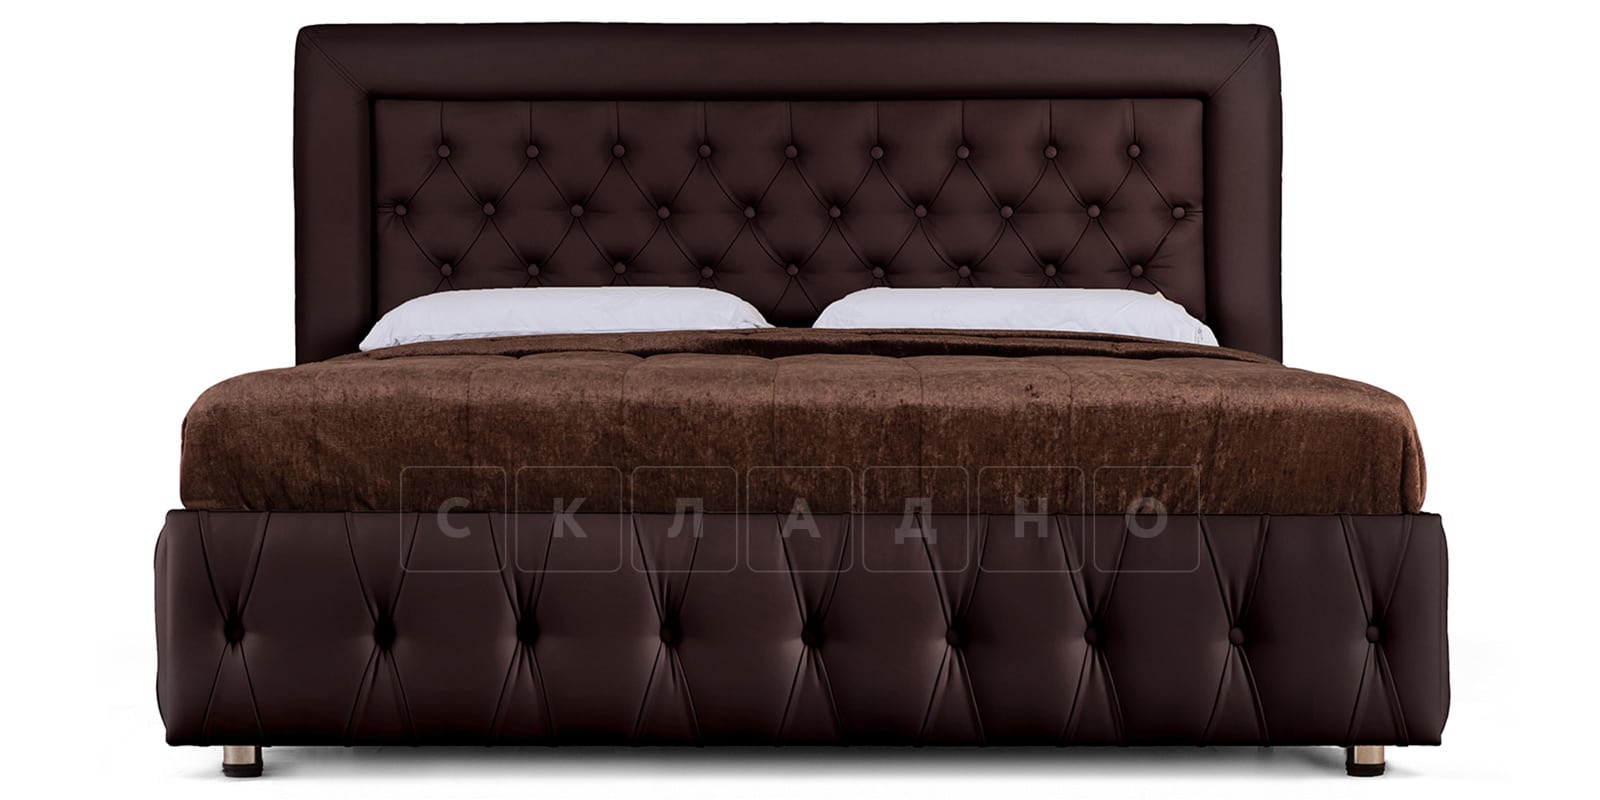 Мягкая кровать Малибу 160 см экокожа шоколадного цвета вариант 7 фото 2 | интернет-магазин Складно